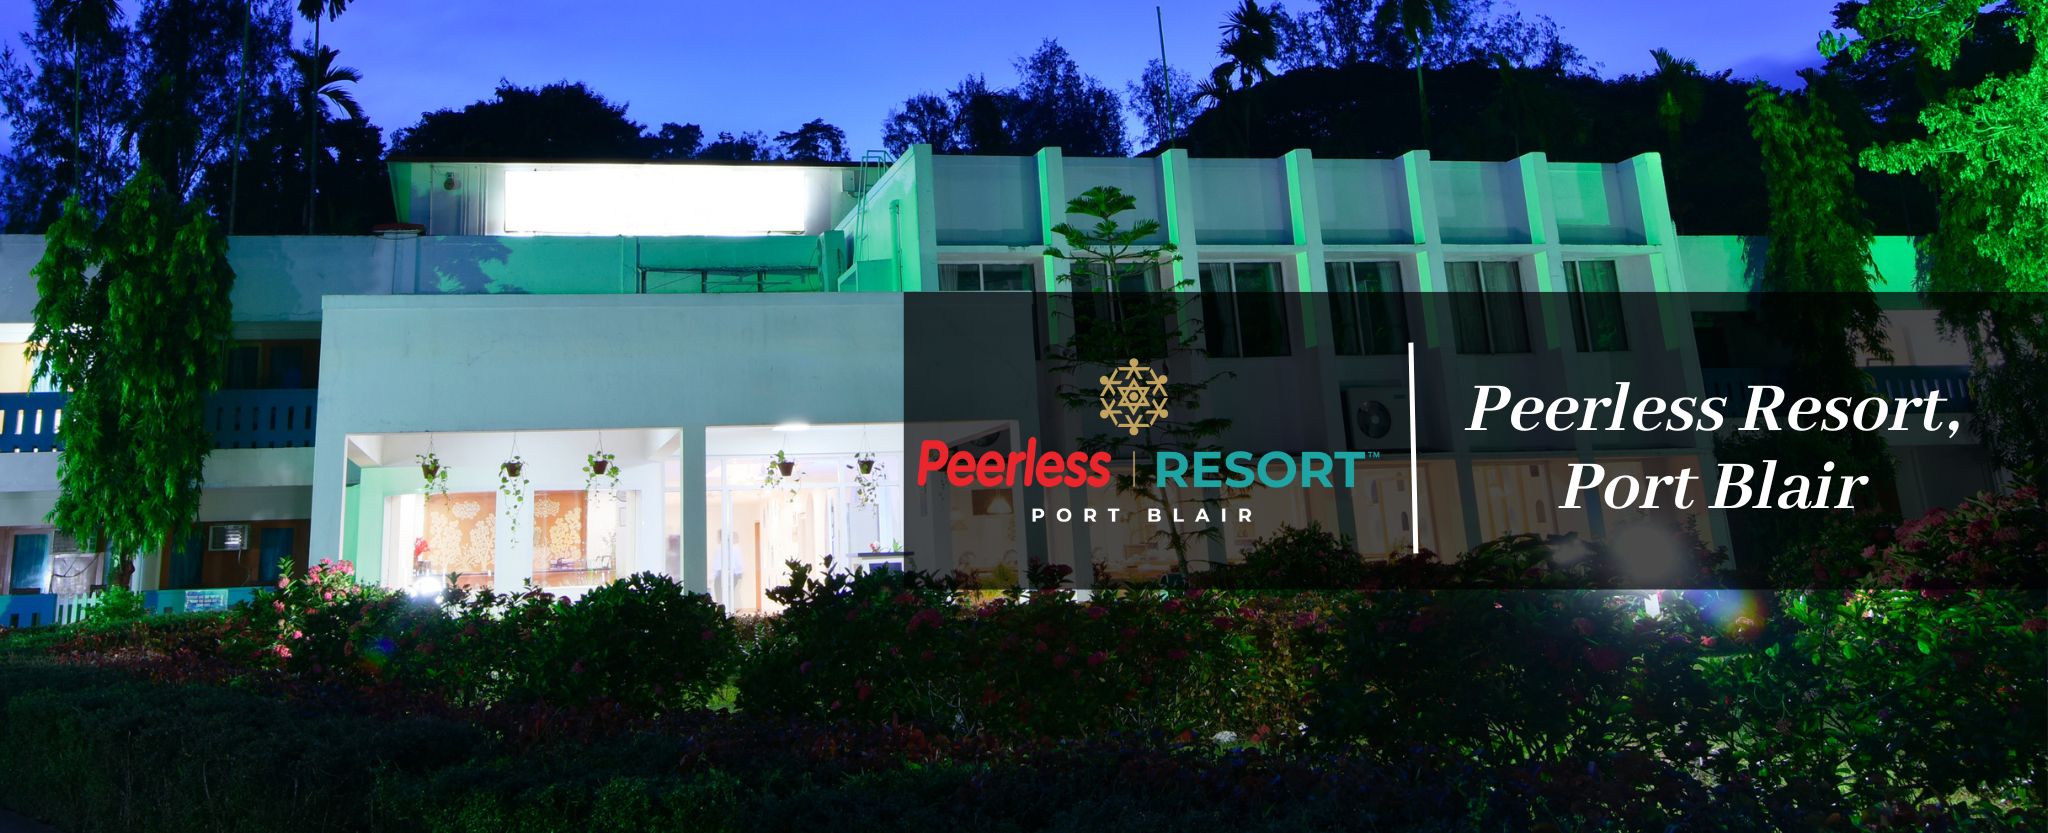 Peerless Resort Port Blair